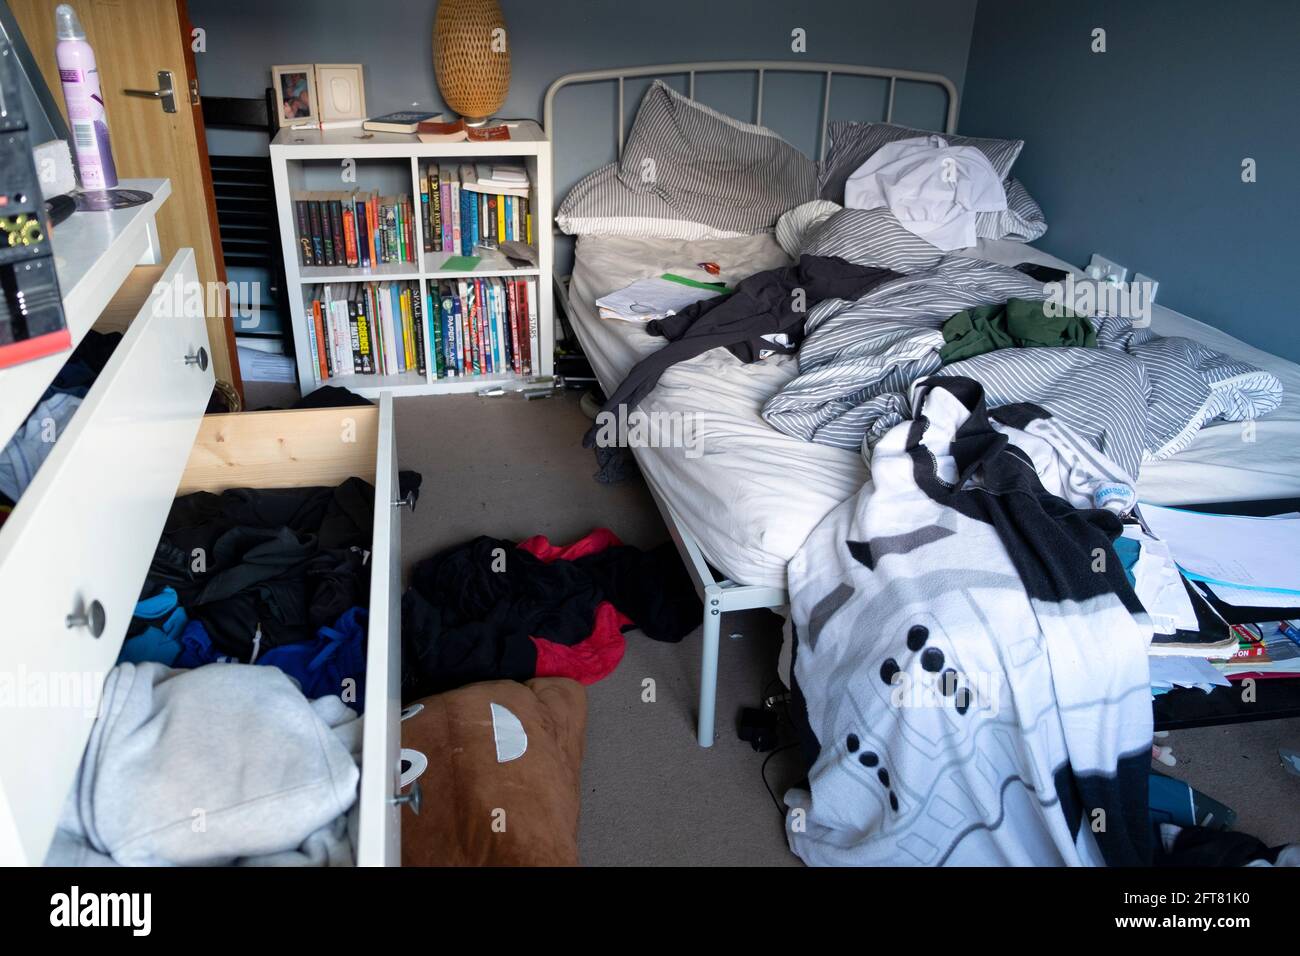 Adolescent garçon adolescents adolescents adolescents 15 16 adolescents désordre chambre chambres à coucher défaites livres de lit ordinateur tiroirs ouverts murs bleus au Royaume-Uni KATHY DEWITT Banque D'Images